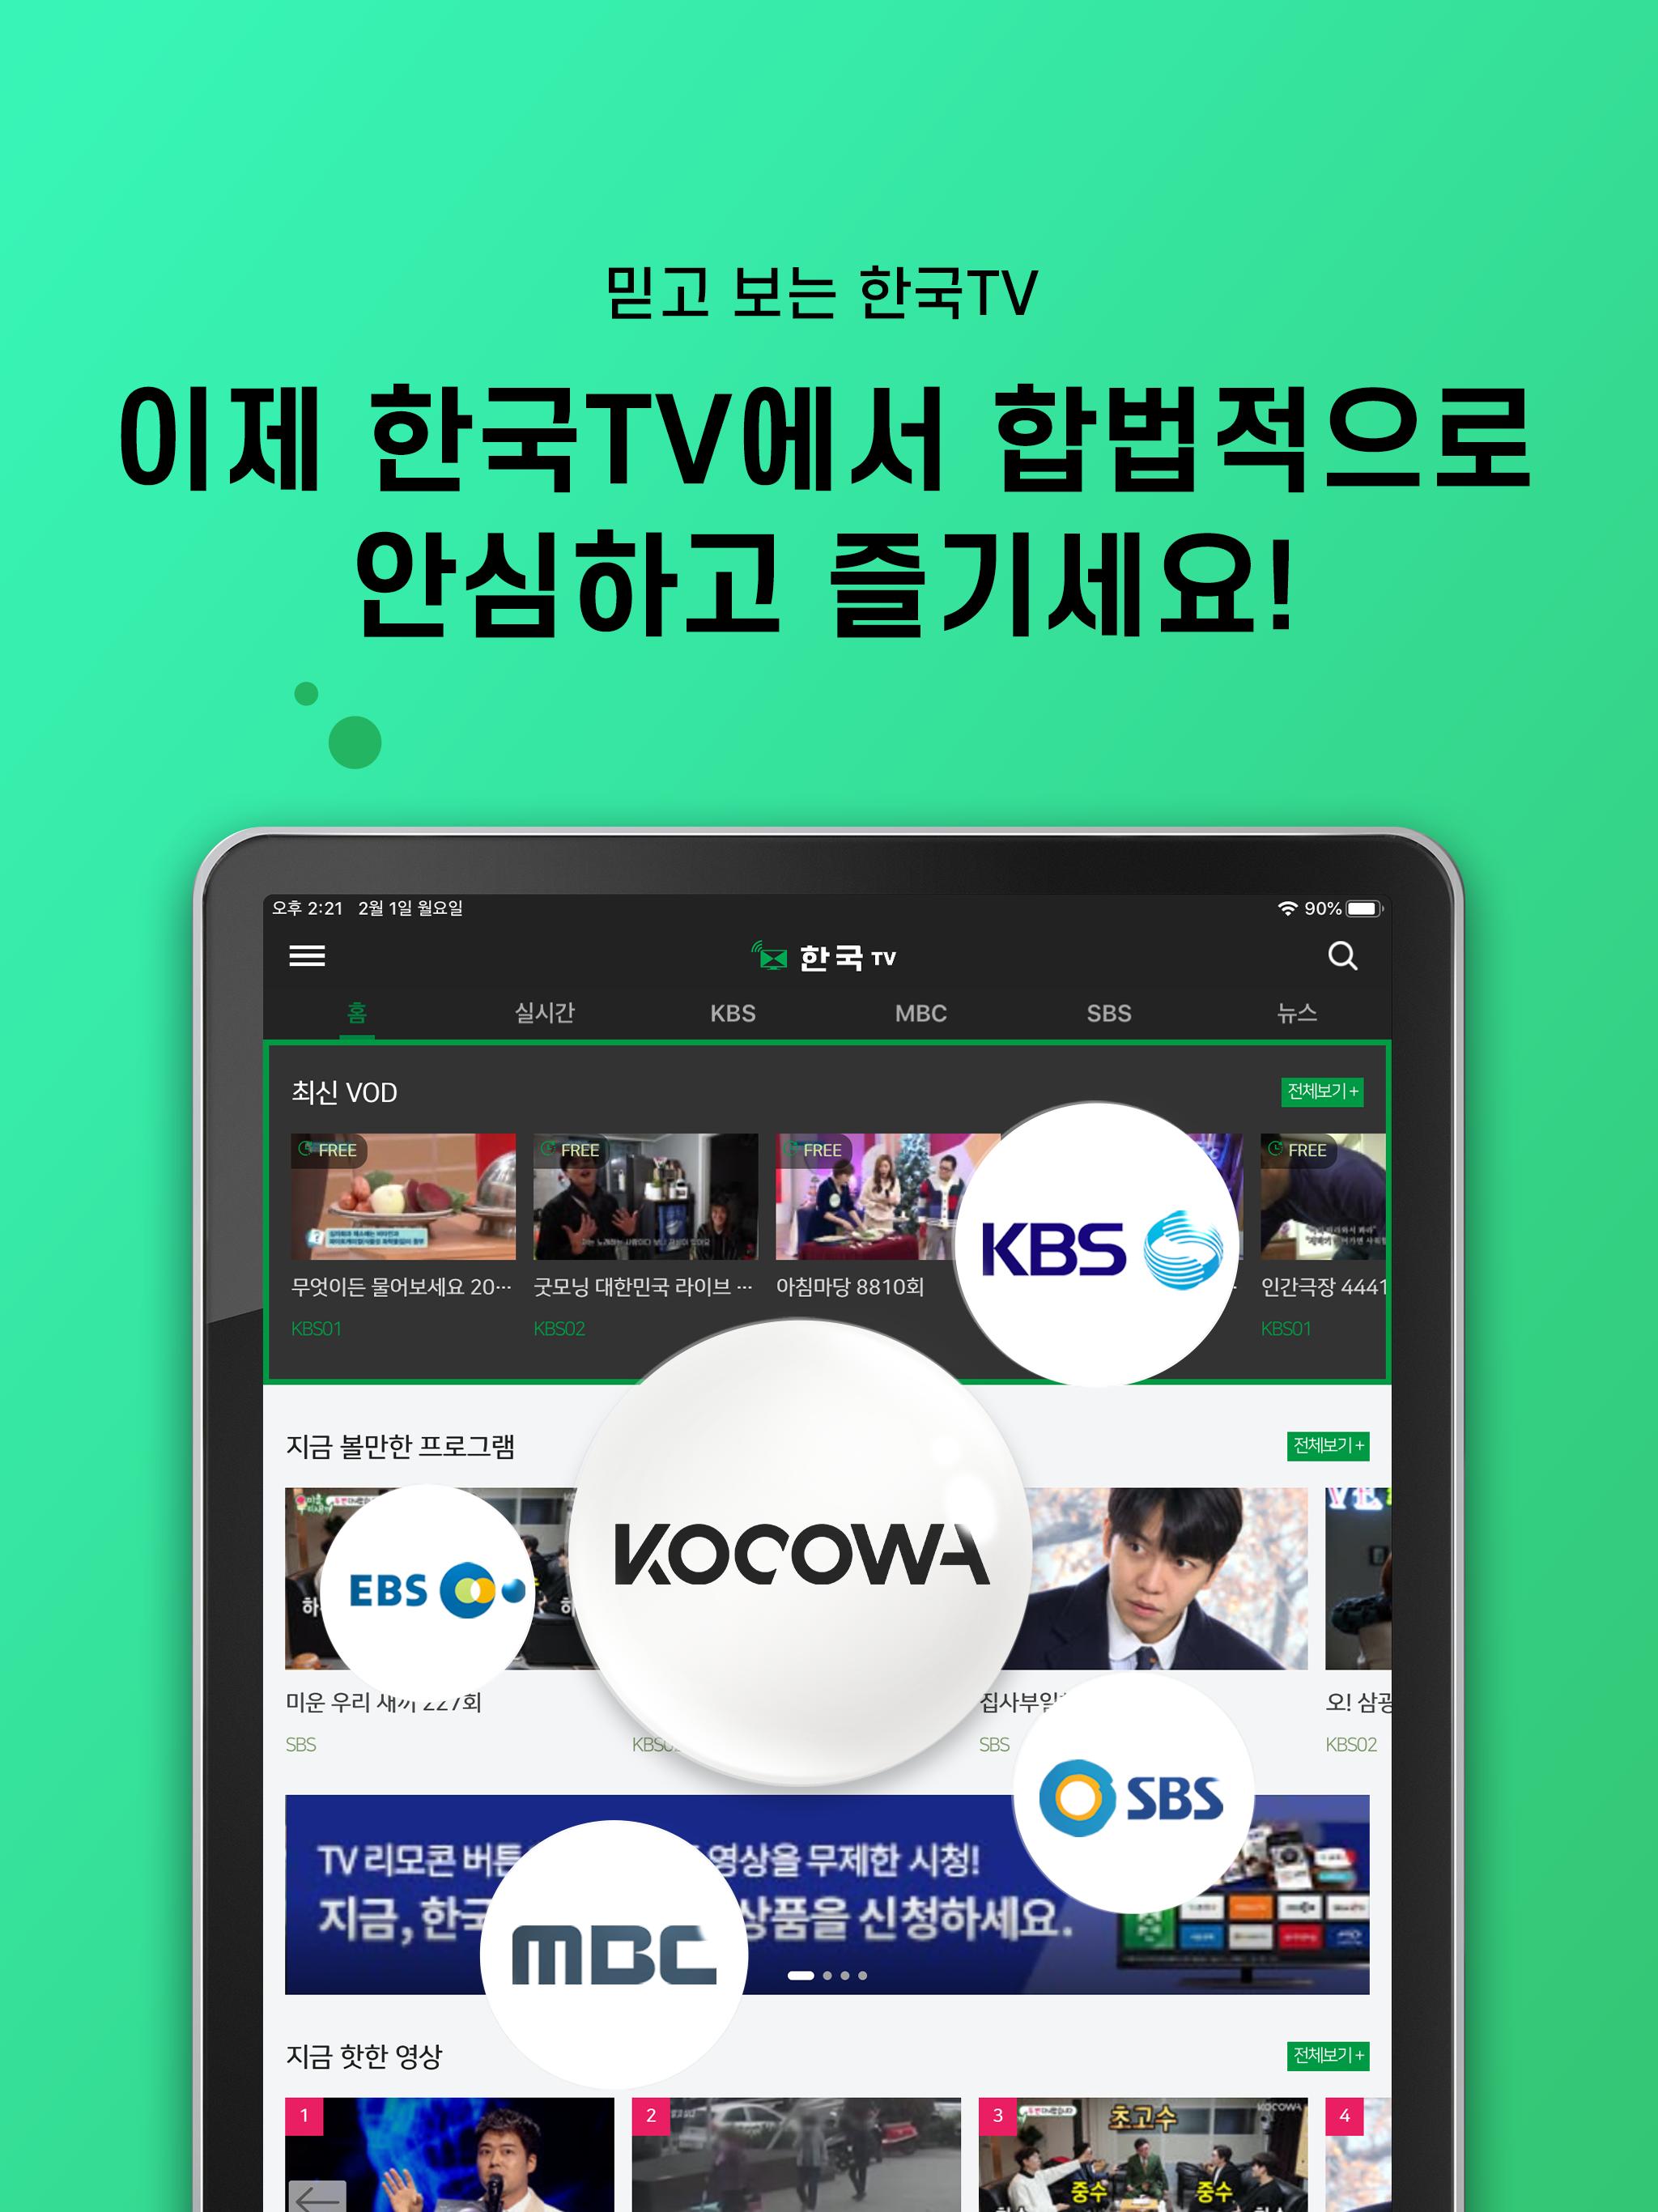 한국TV - 언제 어디서든 골라보고, 함께 볼 수 있는 즐거움